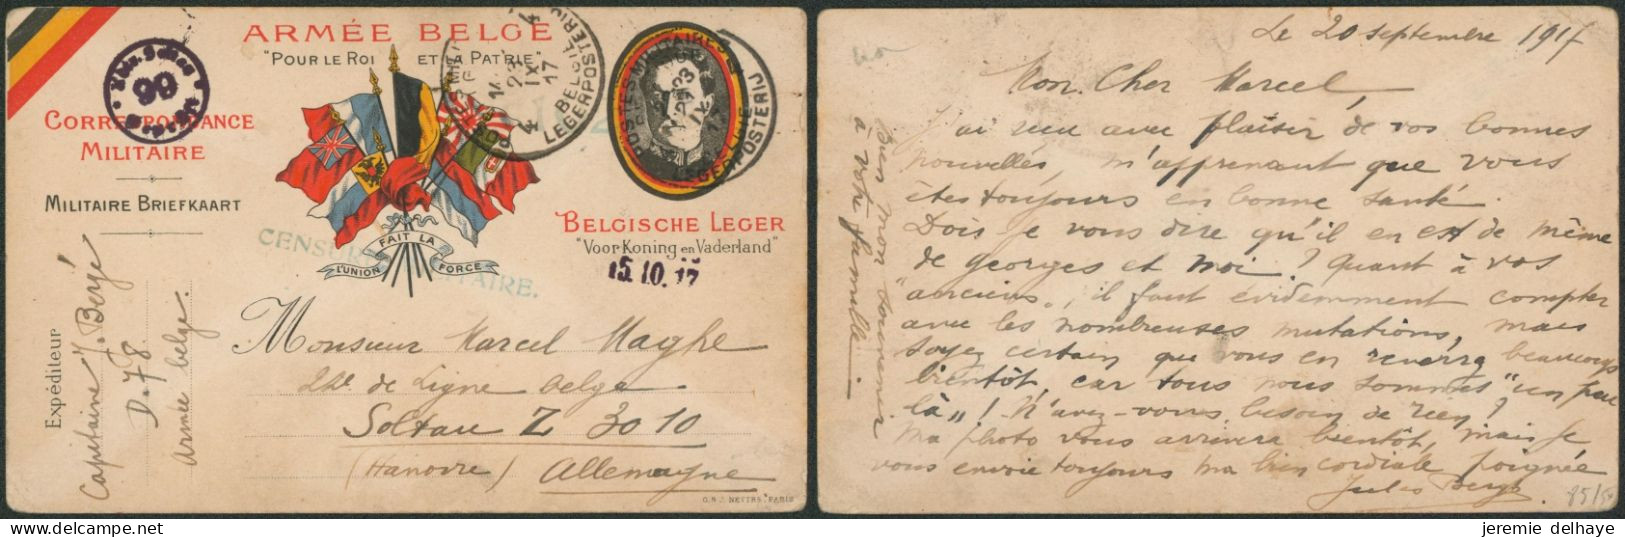 Carte Correspondance Militaire (Albert) Expédié Via P.M.B. 4 (1917) + Censure Verte > Prisonnier Belge à Soltau. - Belgisch Leger